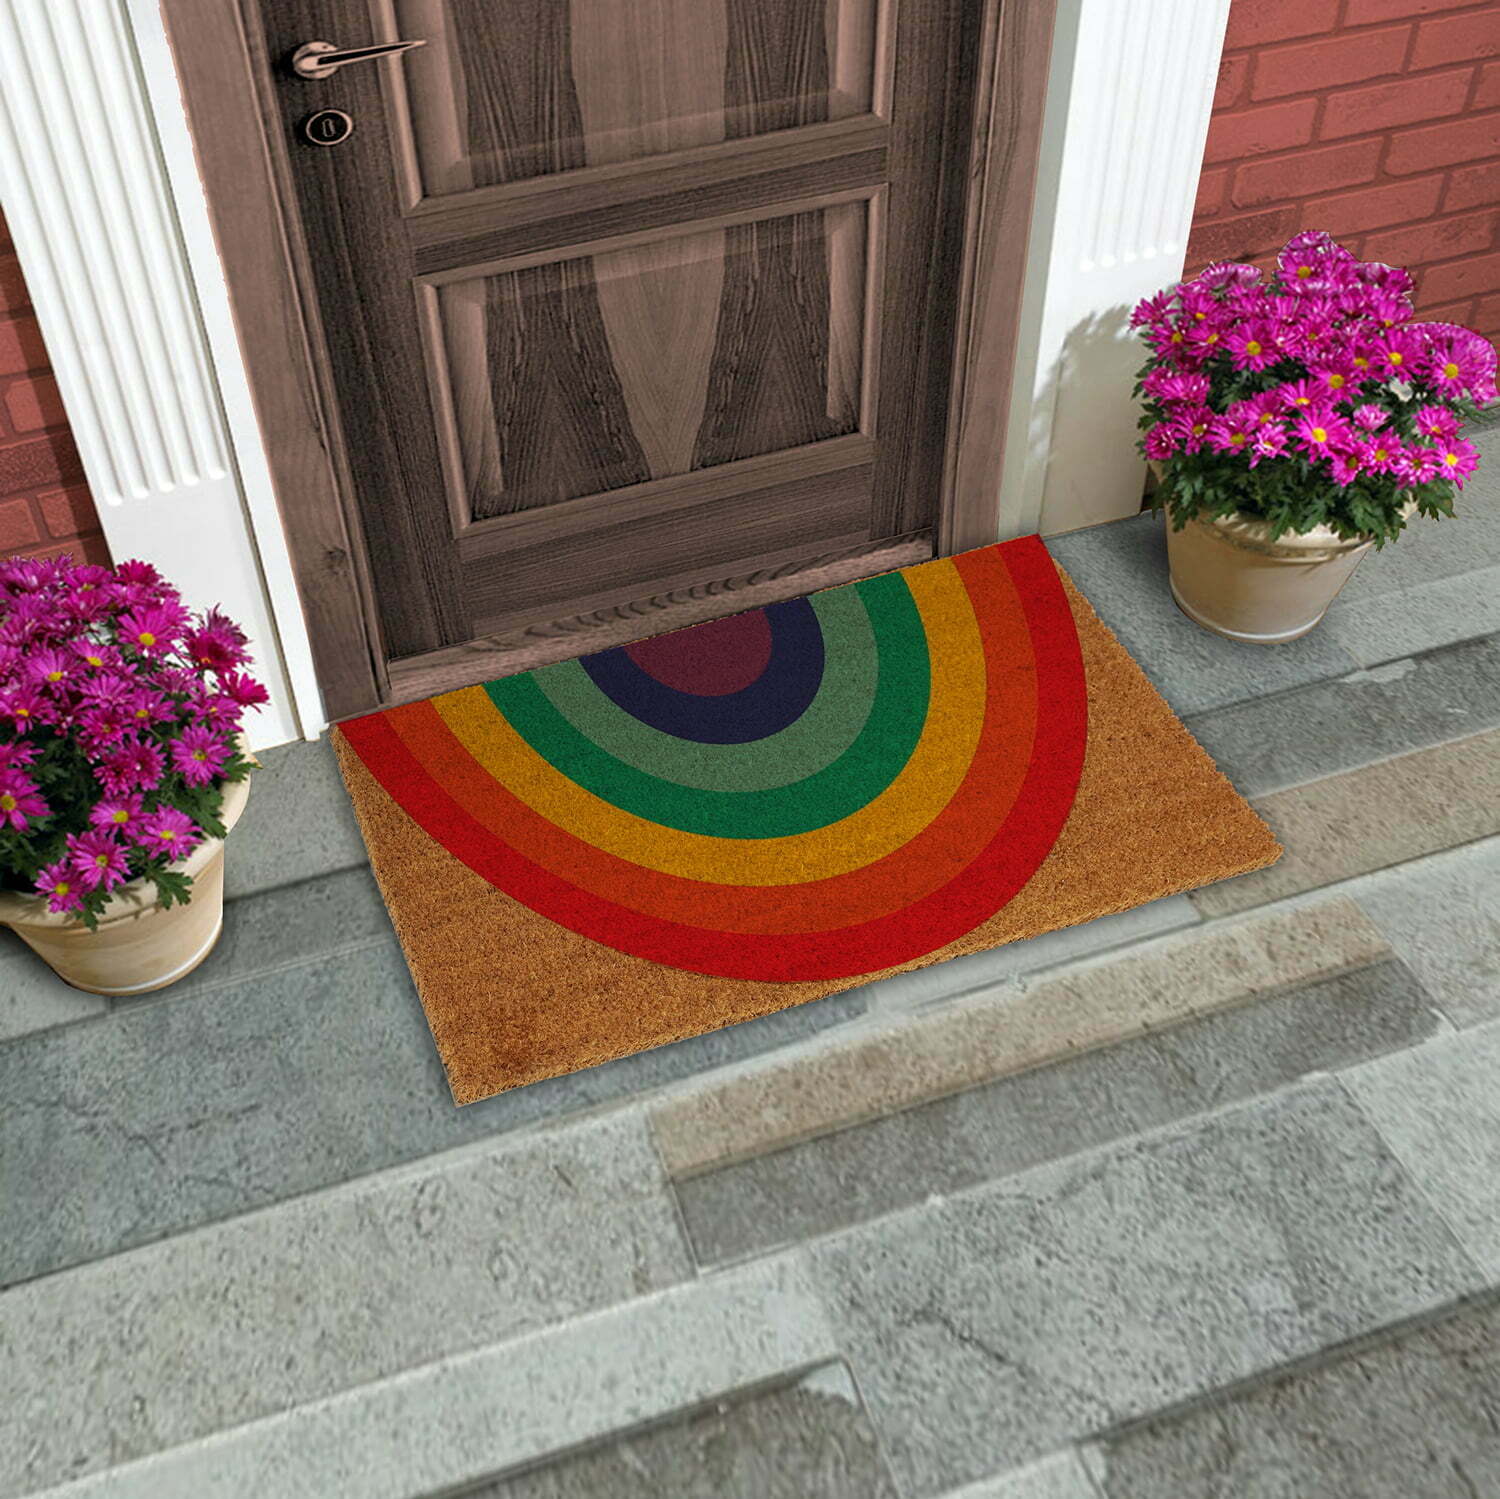 The Rainbow Coir Doormat